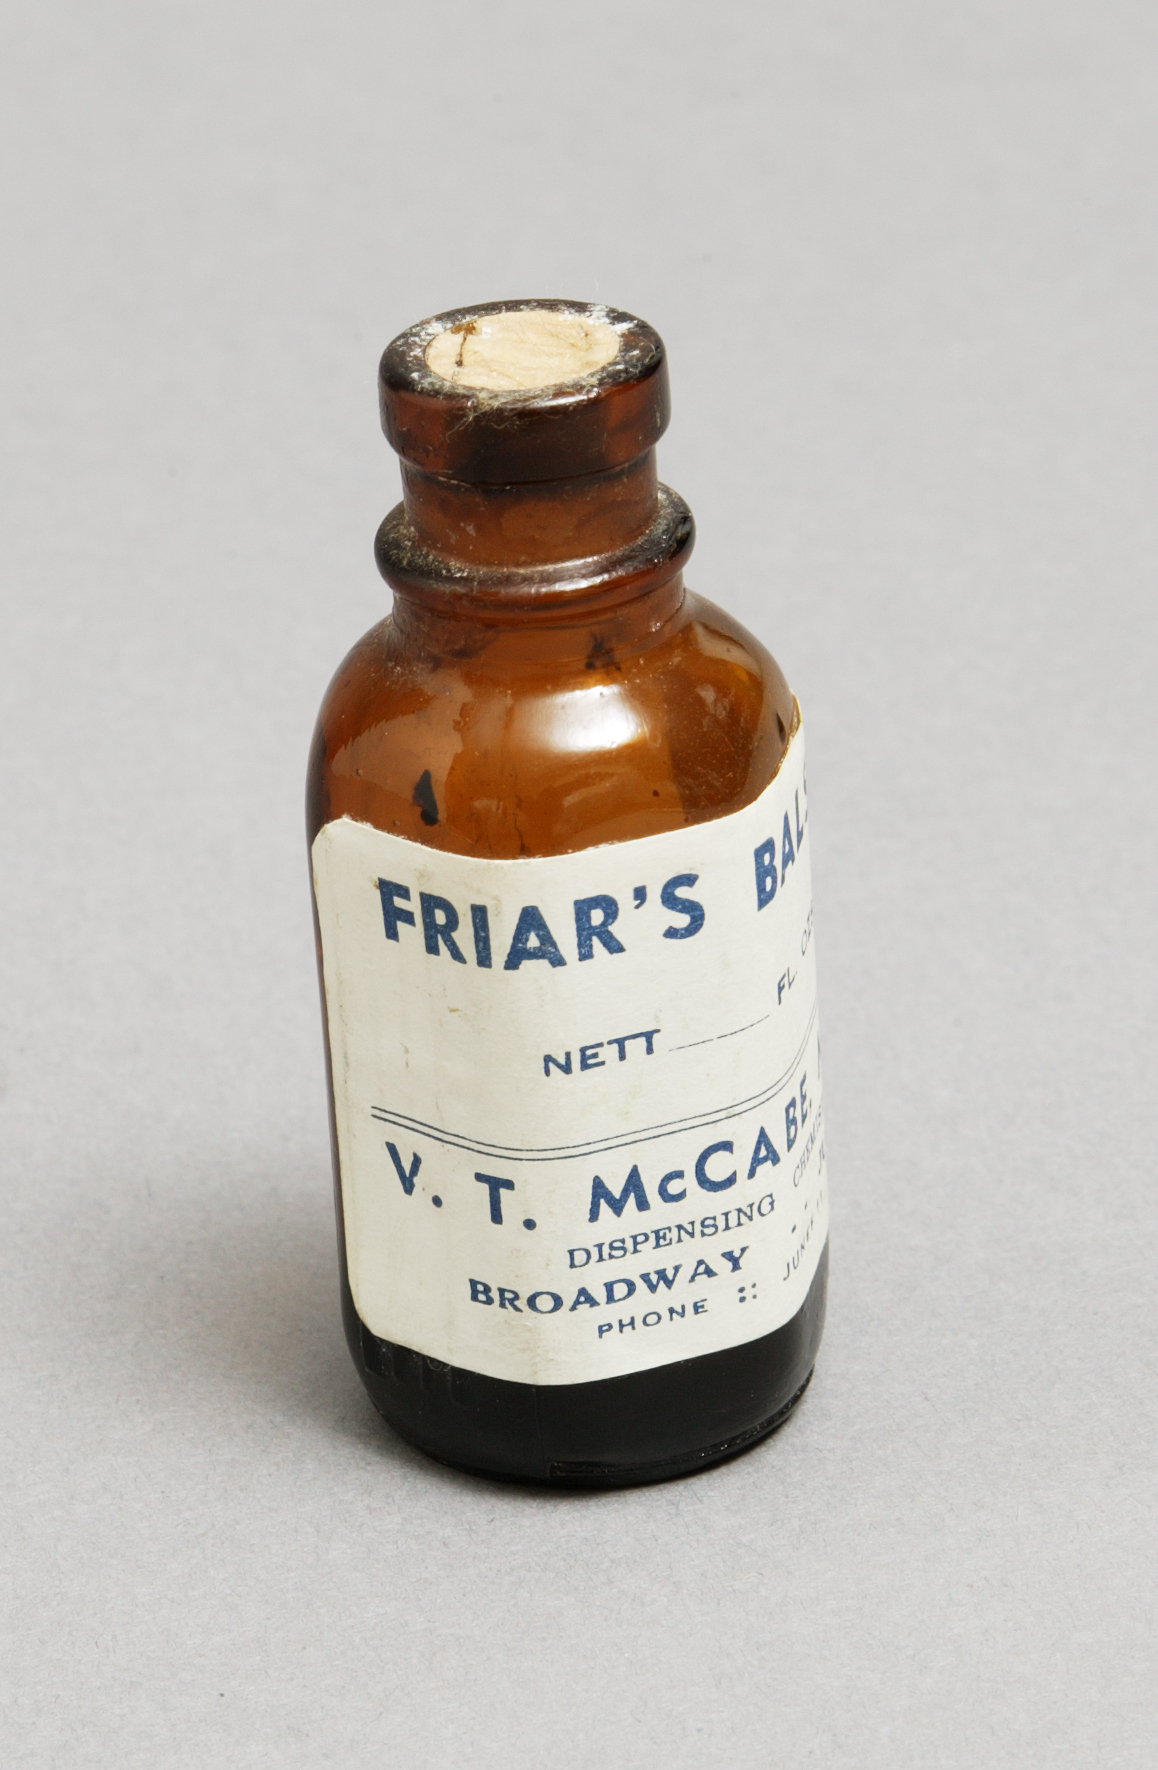 Friar's Balsam medicine bottle